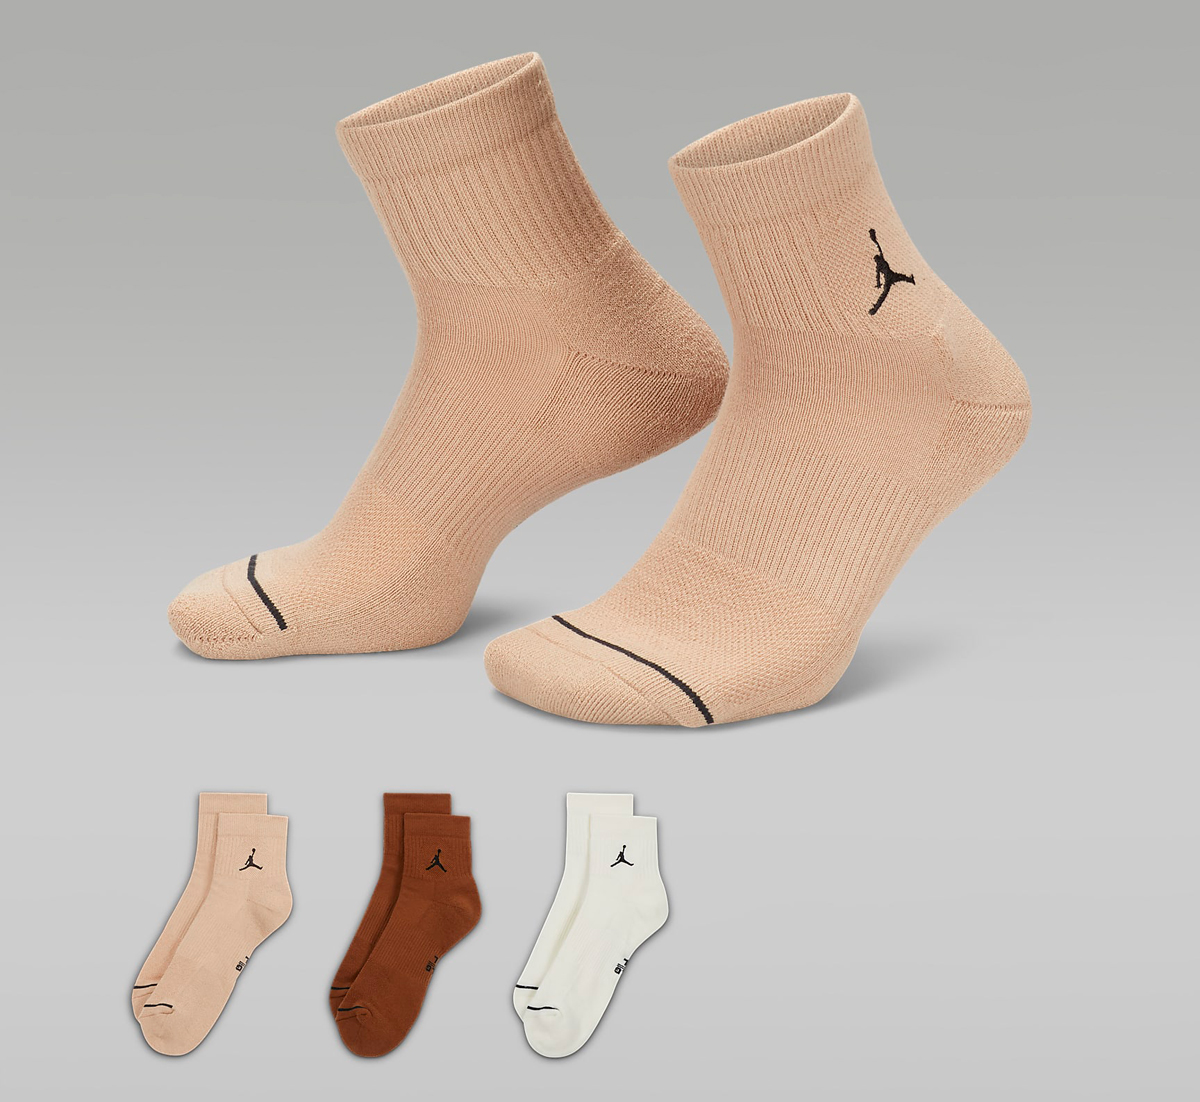 Jordan-Everyday-Ankle-Socks-Hemp-Khaki-Light-British-Tan-Sail